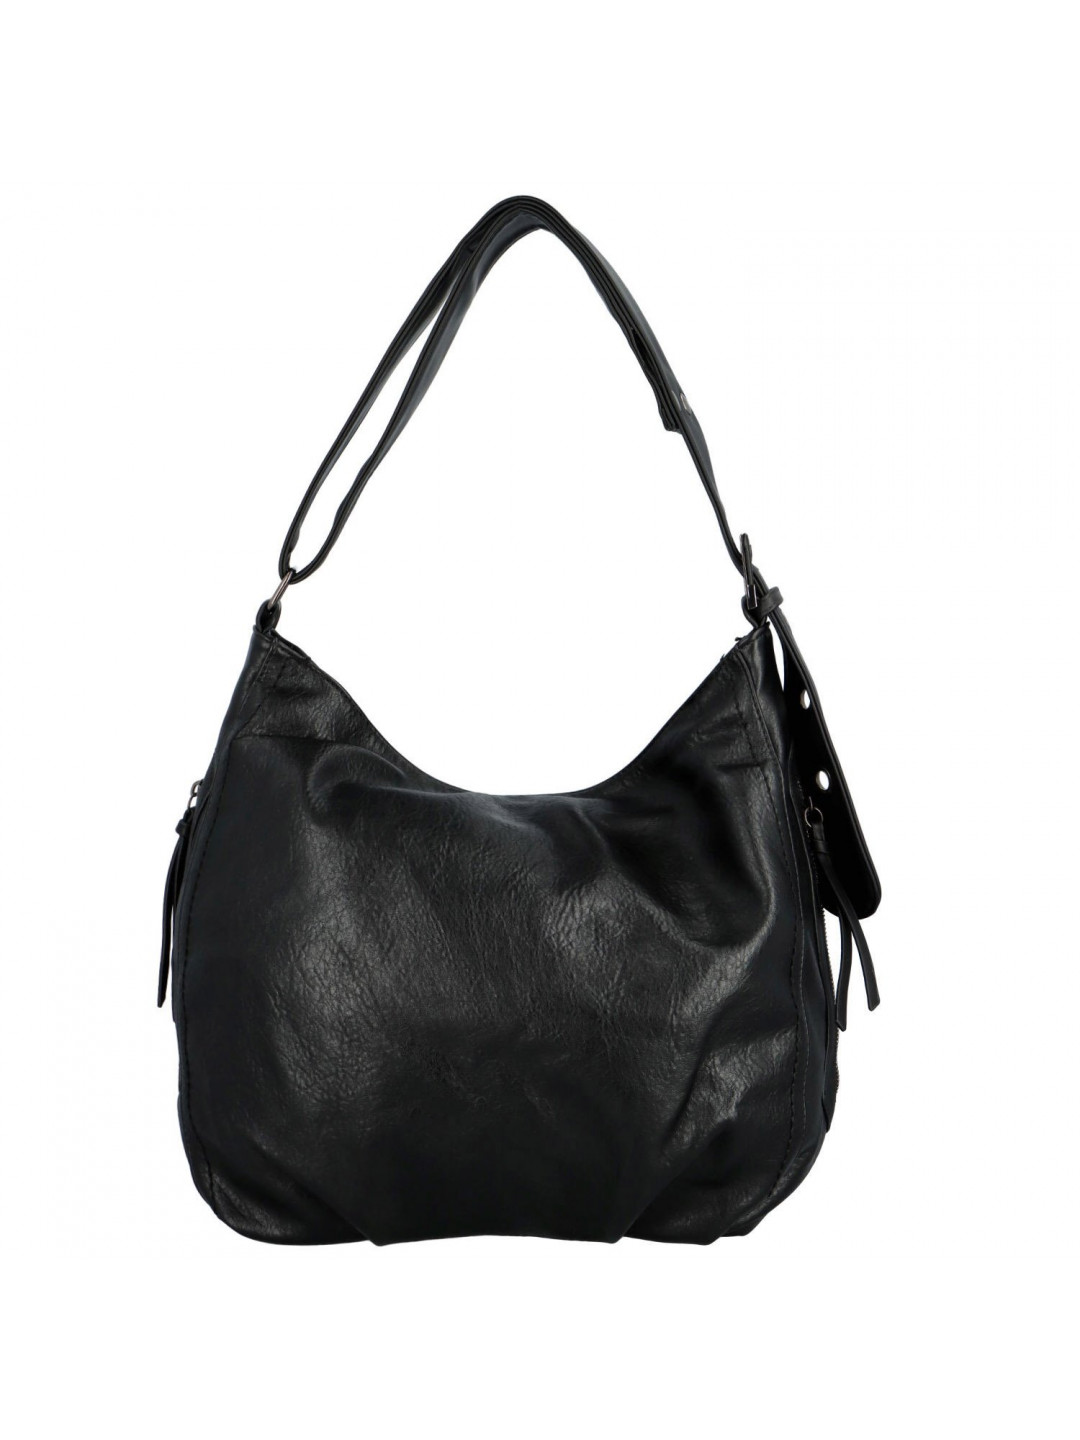 Dámská kabelka přes rameno černá – Romina & Co Bags Corazon